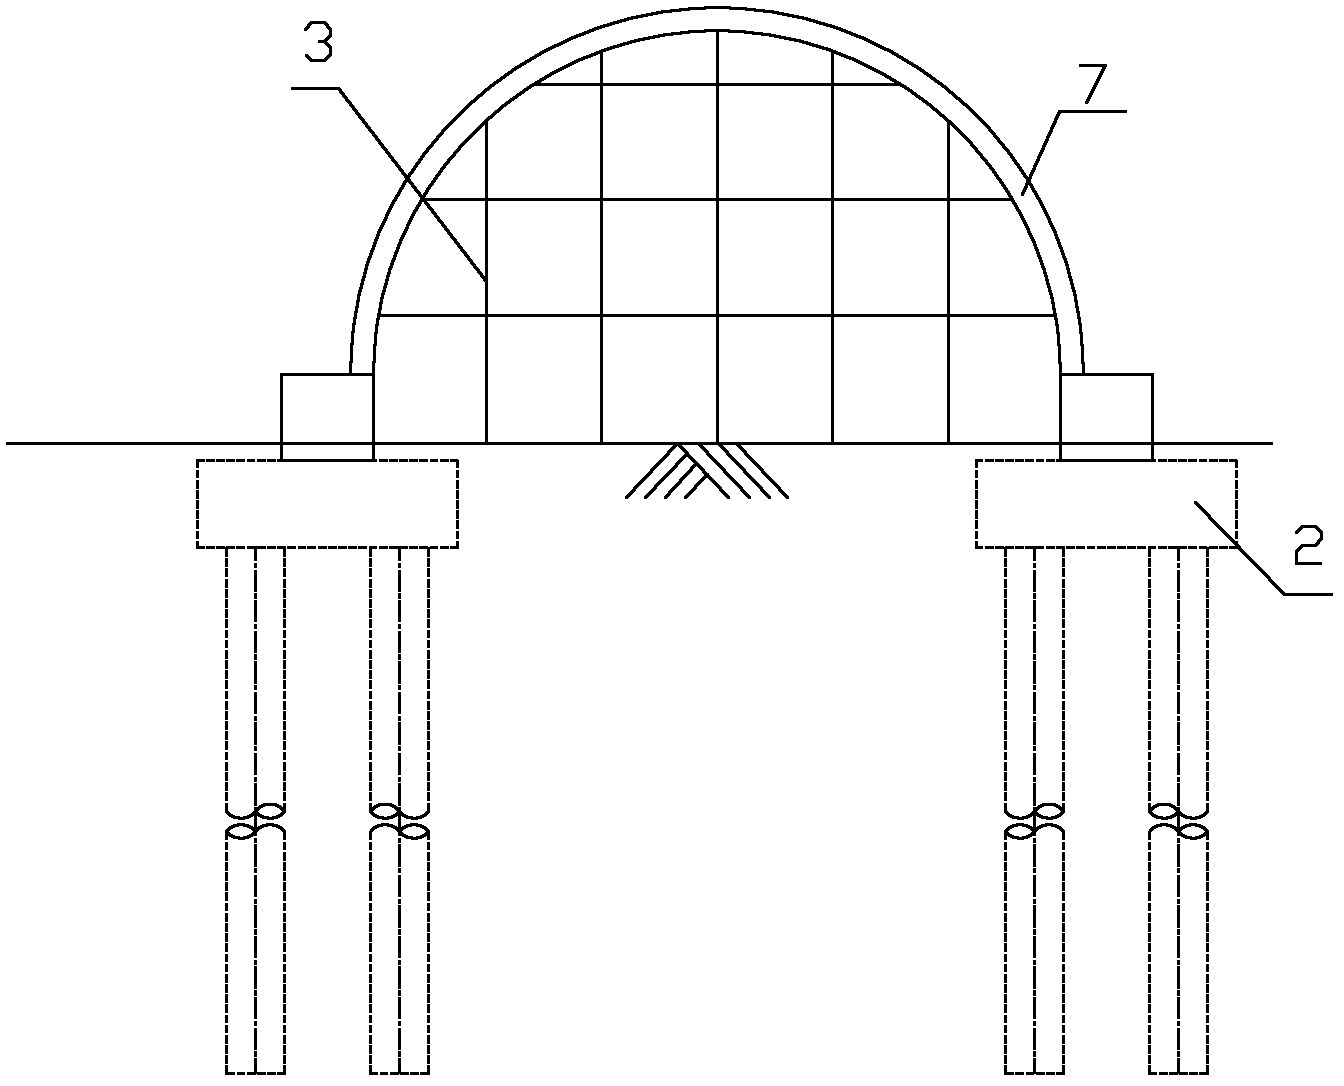 Reinforced concrete arch bridge construction method